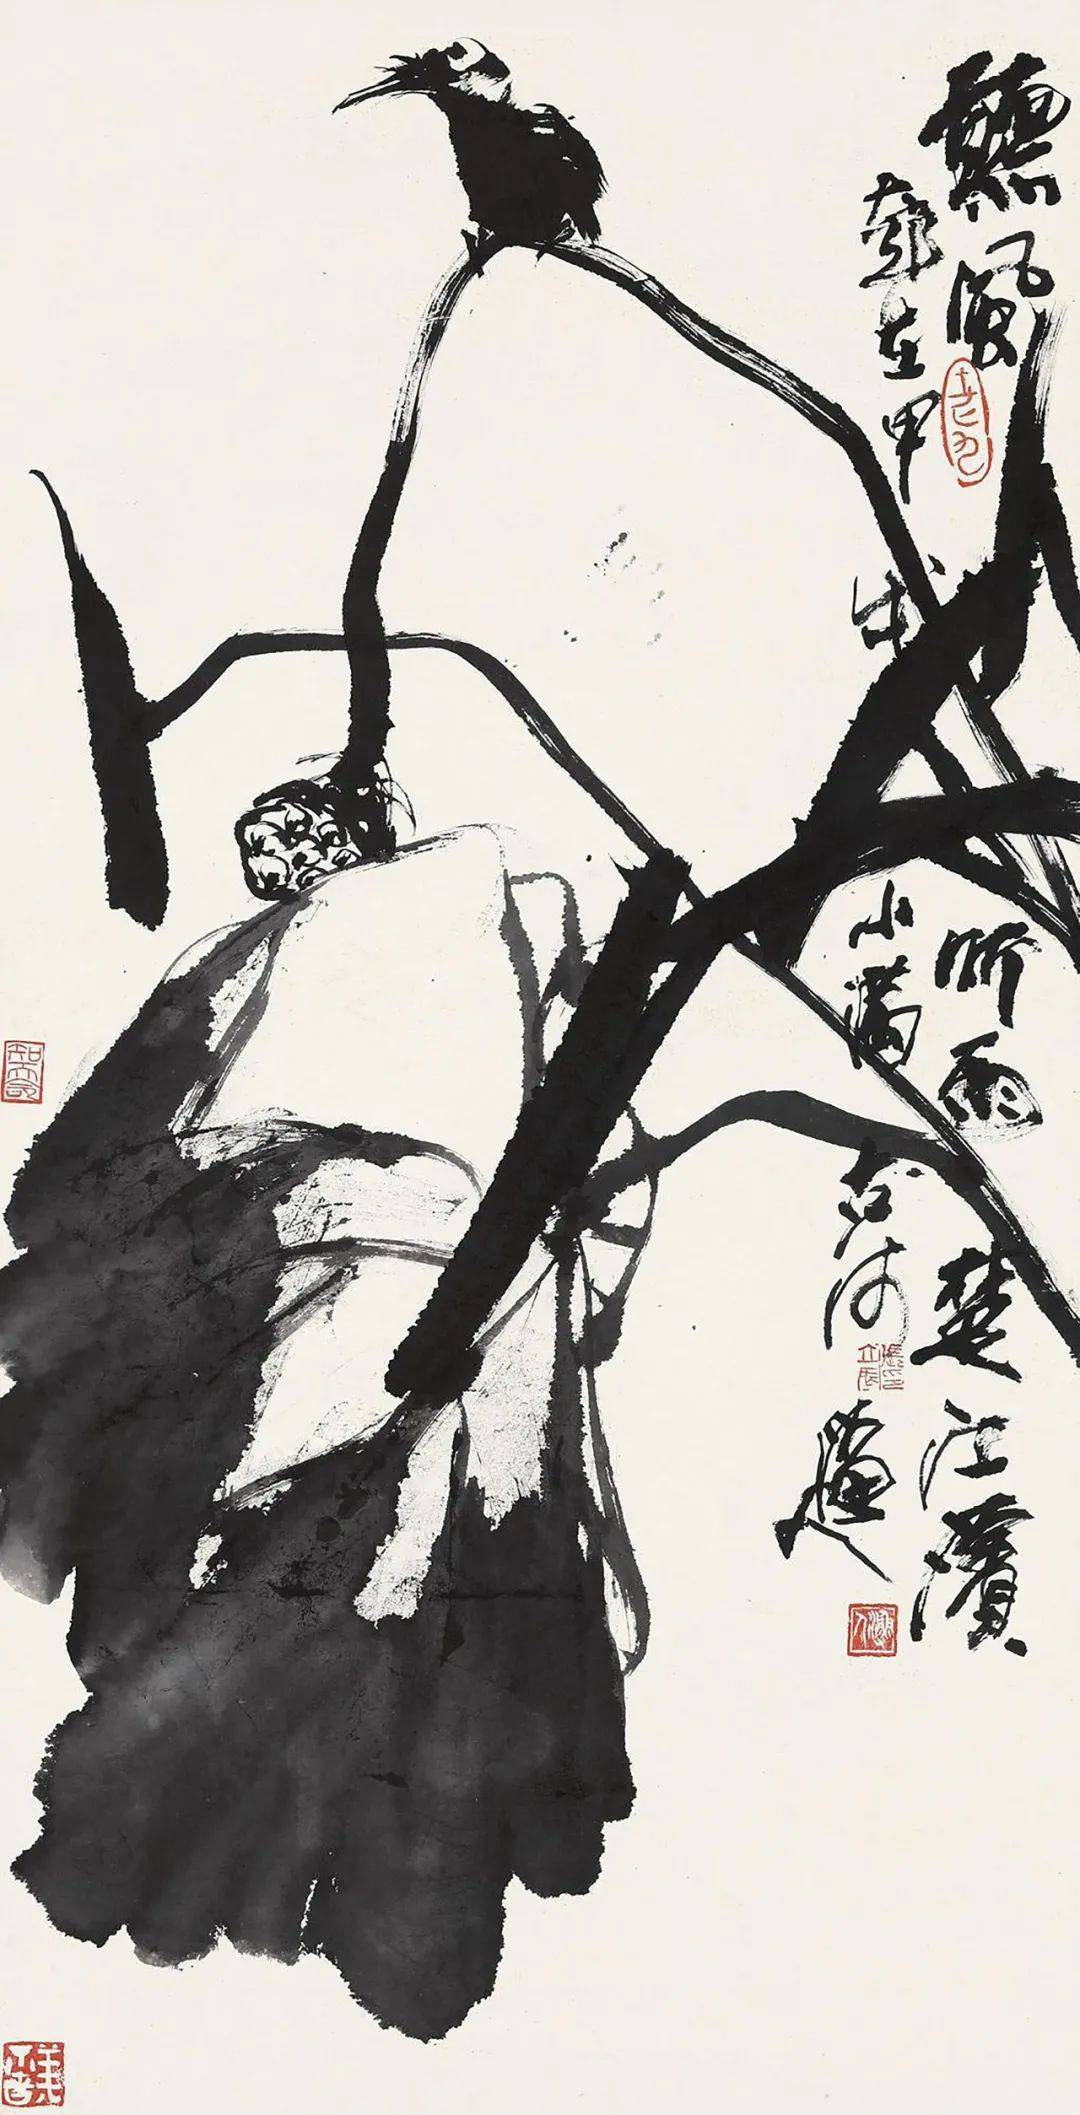 第1528期:张立辰——2019年最高成交价前10幅作品,中国画家拍卖成交